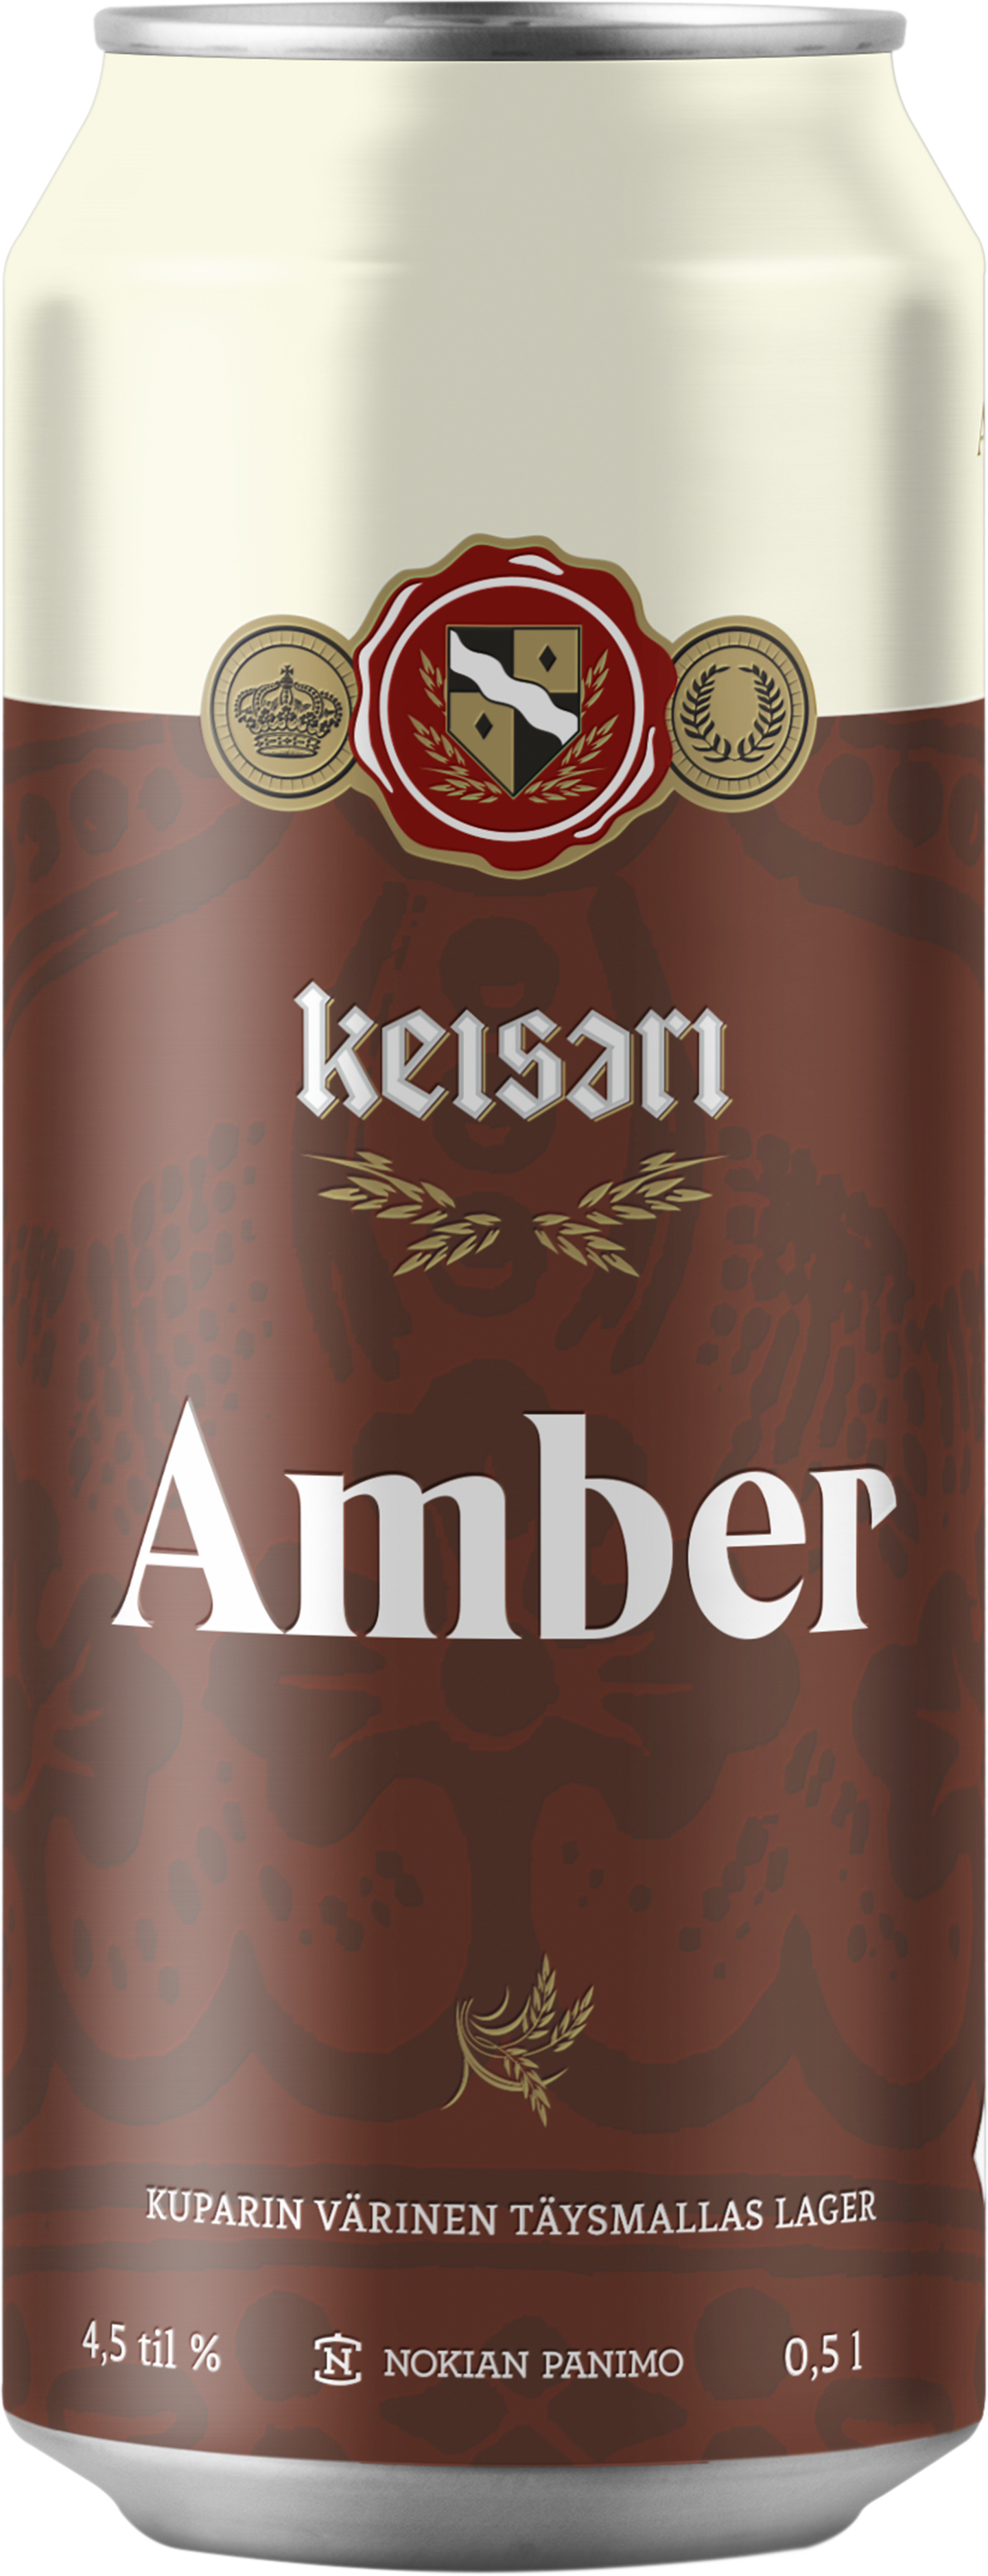 KEISARI Amber 4,5% 0,5l